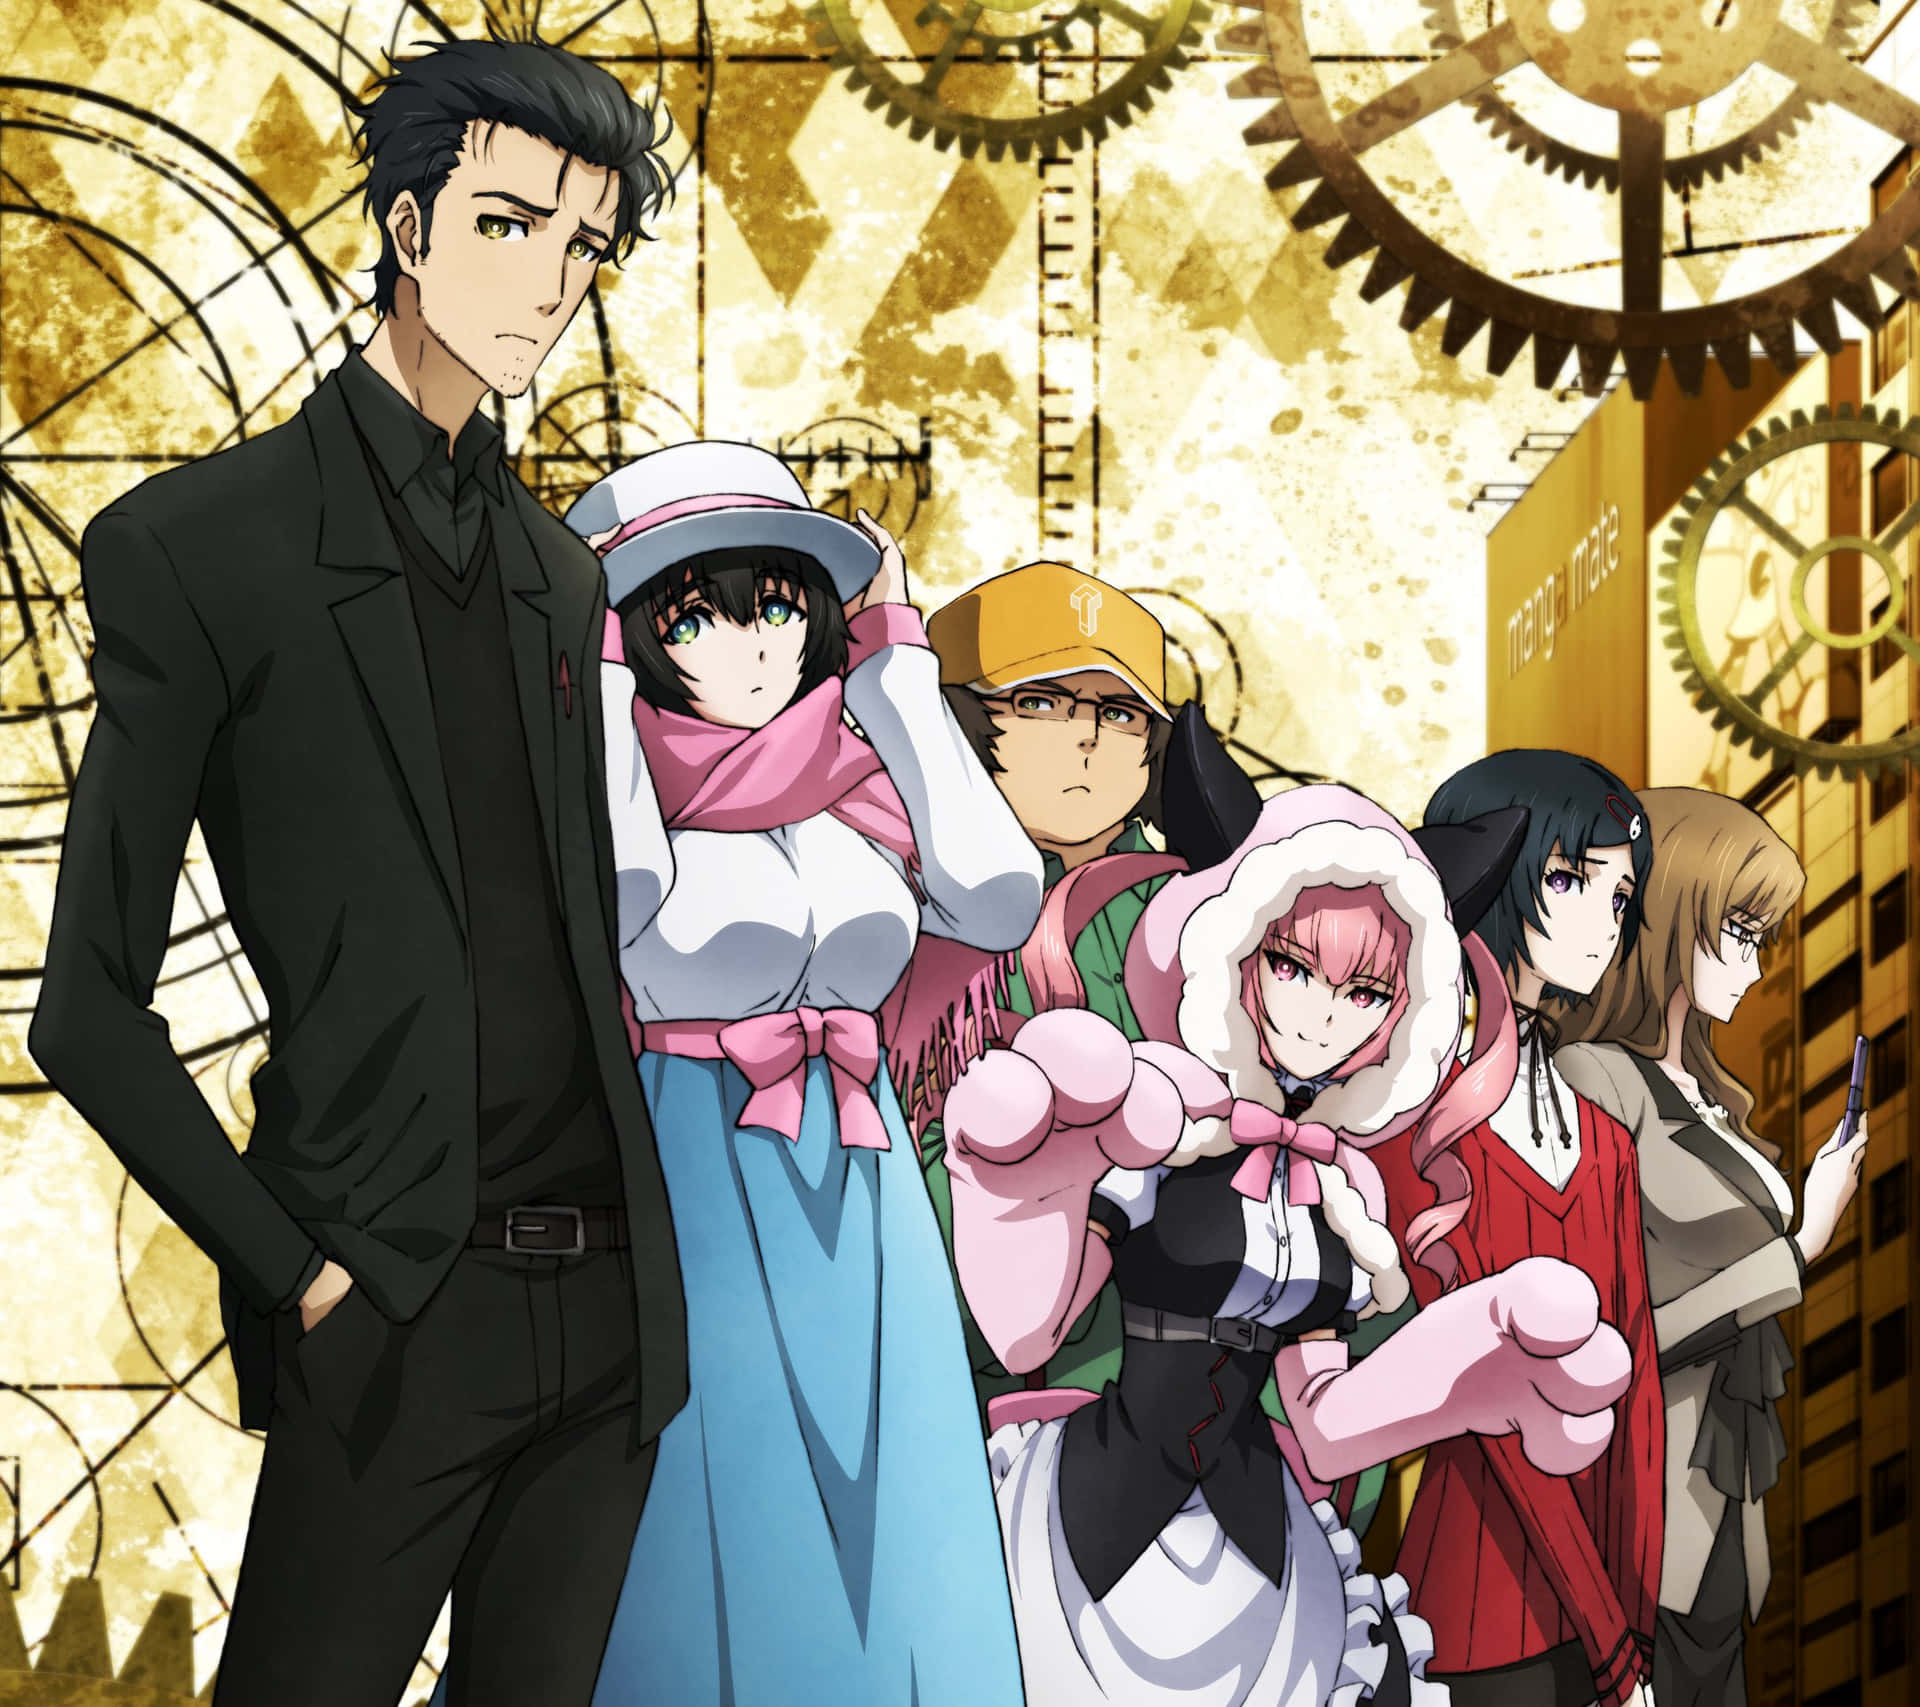 Einegruppe Von Anime-charakteren Steht Vor Einer Uhr.